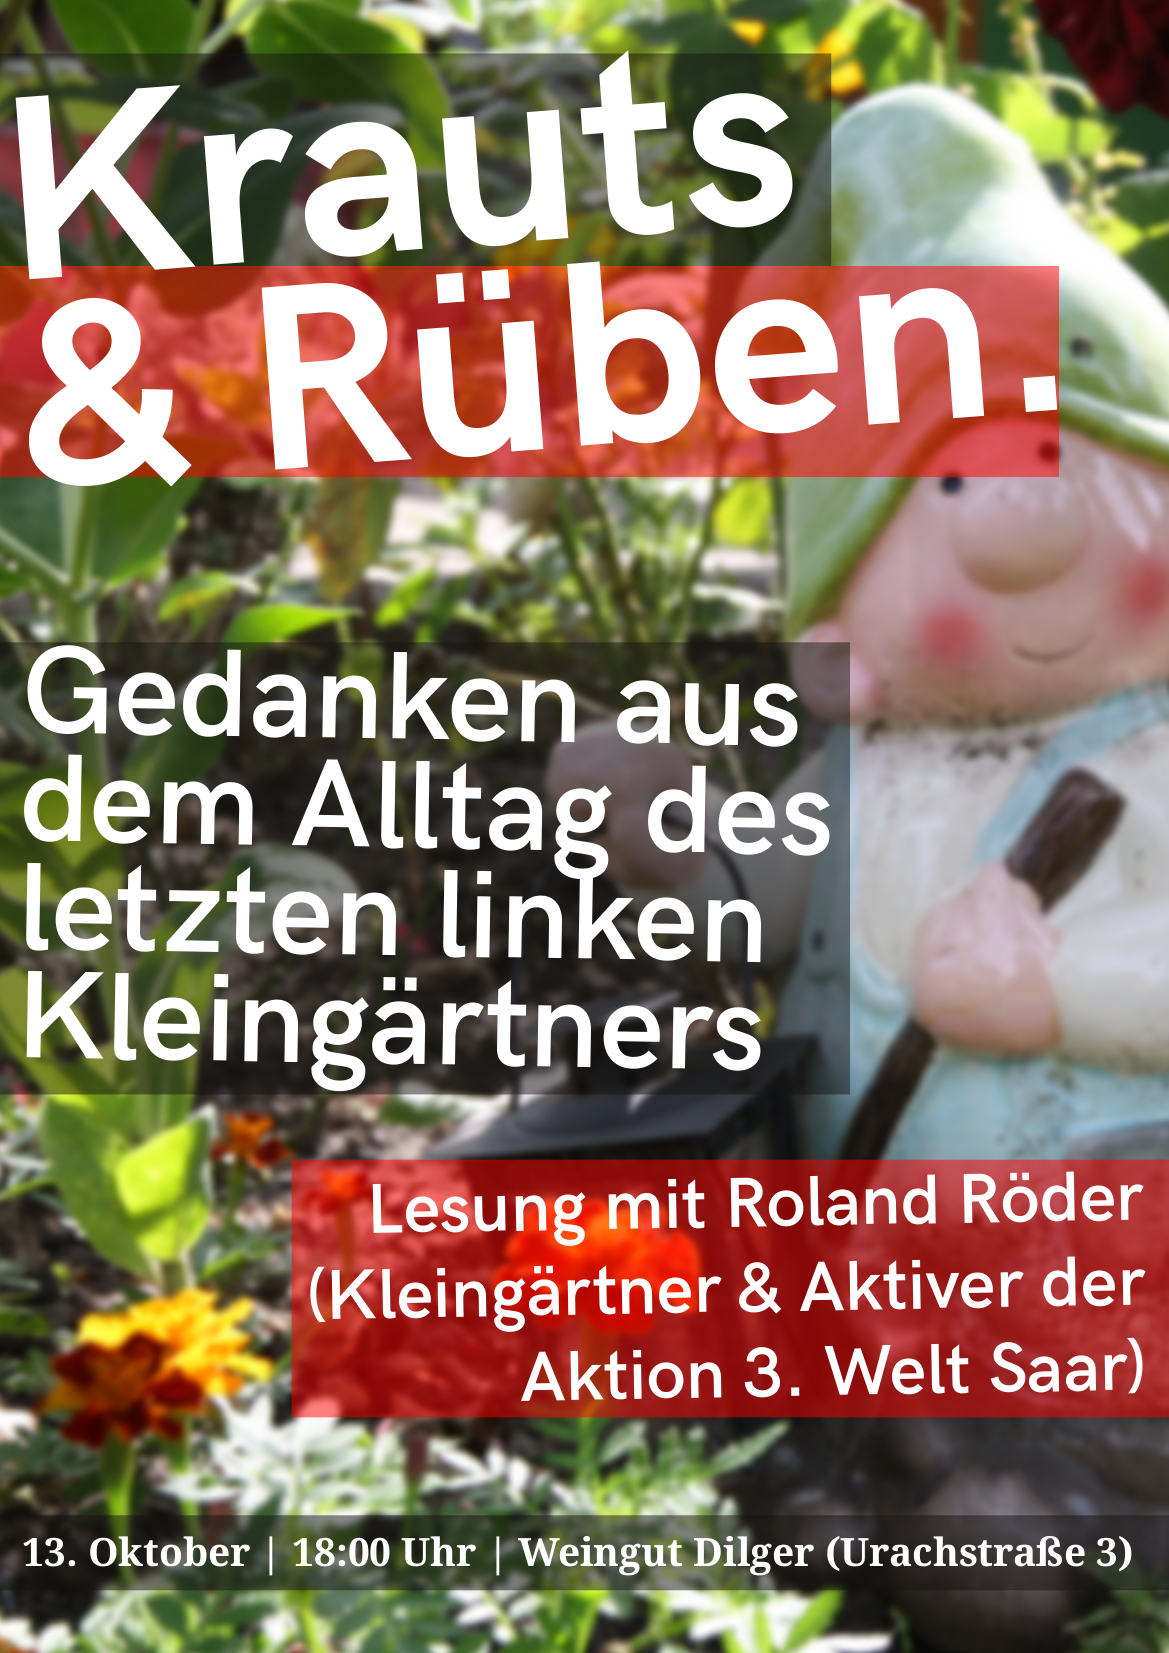 “Krauts & Rüben. Der letzte linke Kleingärtner” – Lesung, Diskussion & Beisammensein mit Roland Röder (Aktion 3. Welt Saar)